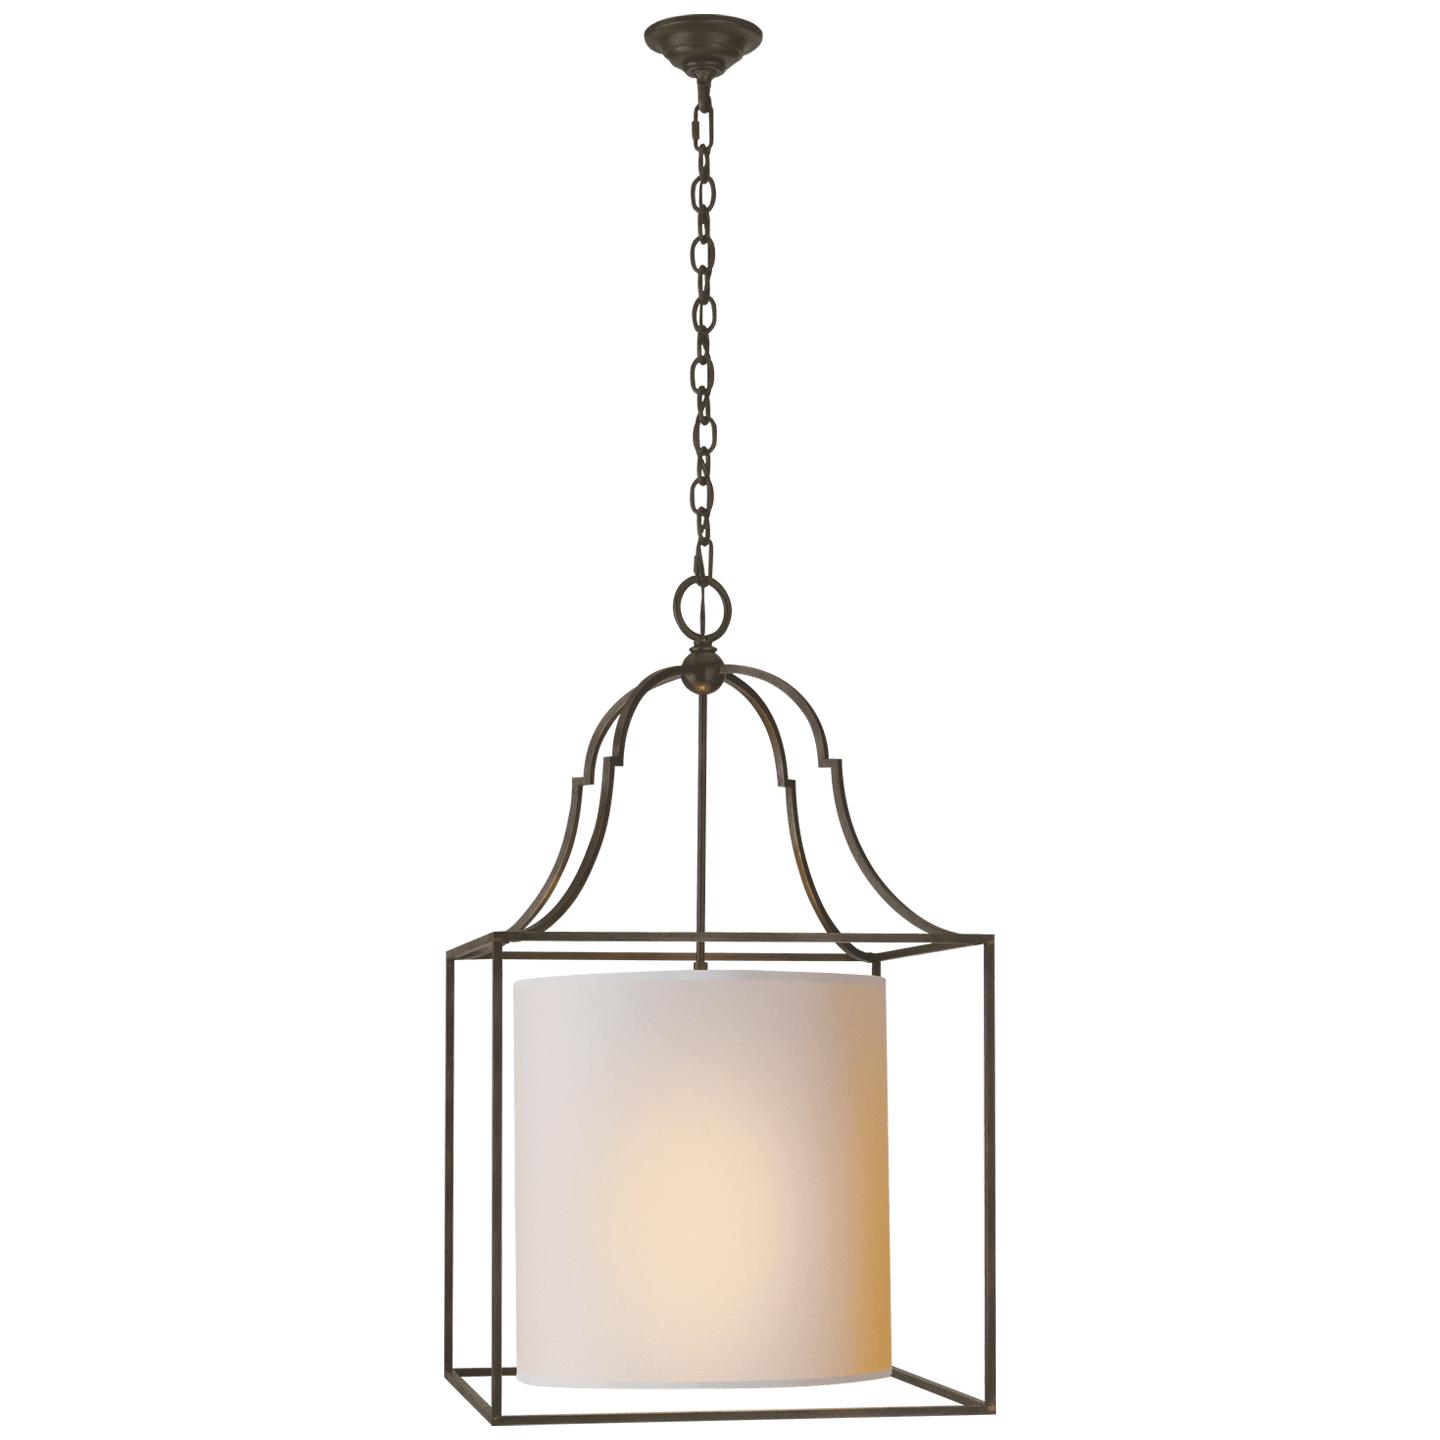 Купить Подвесной светильник Gustavian Lantern в интернет-магазине roooms.ru